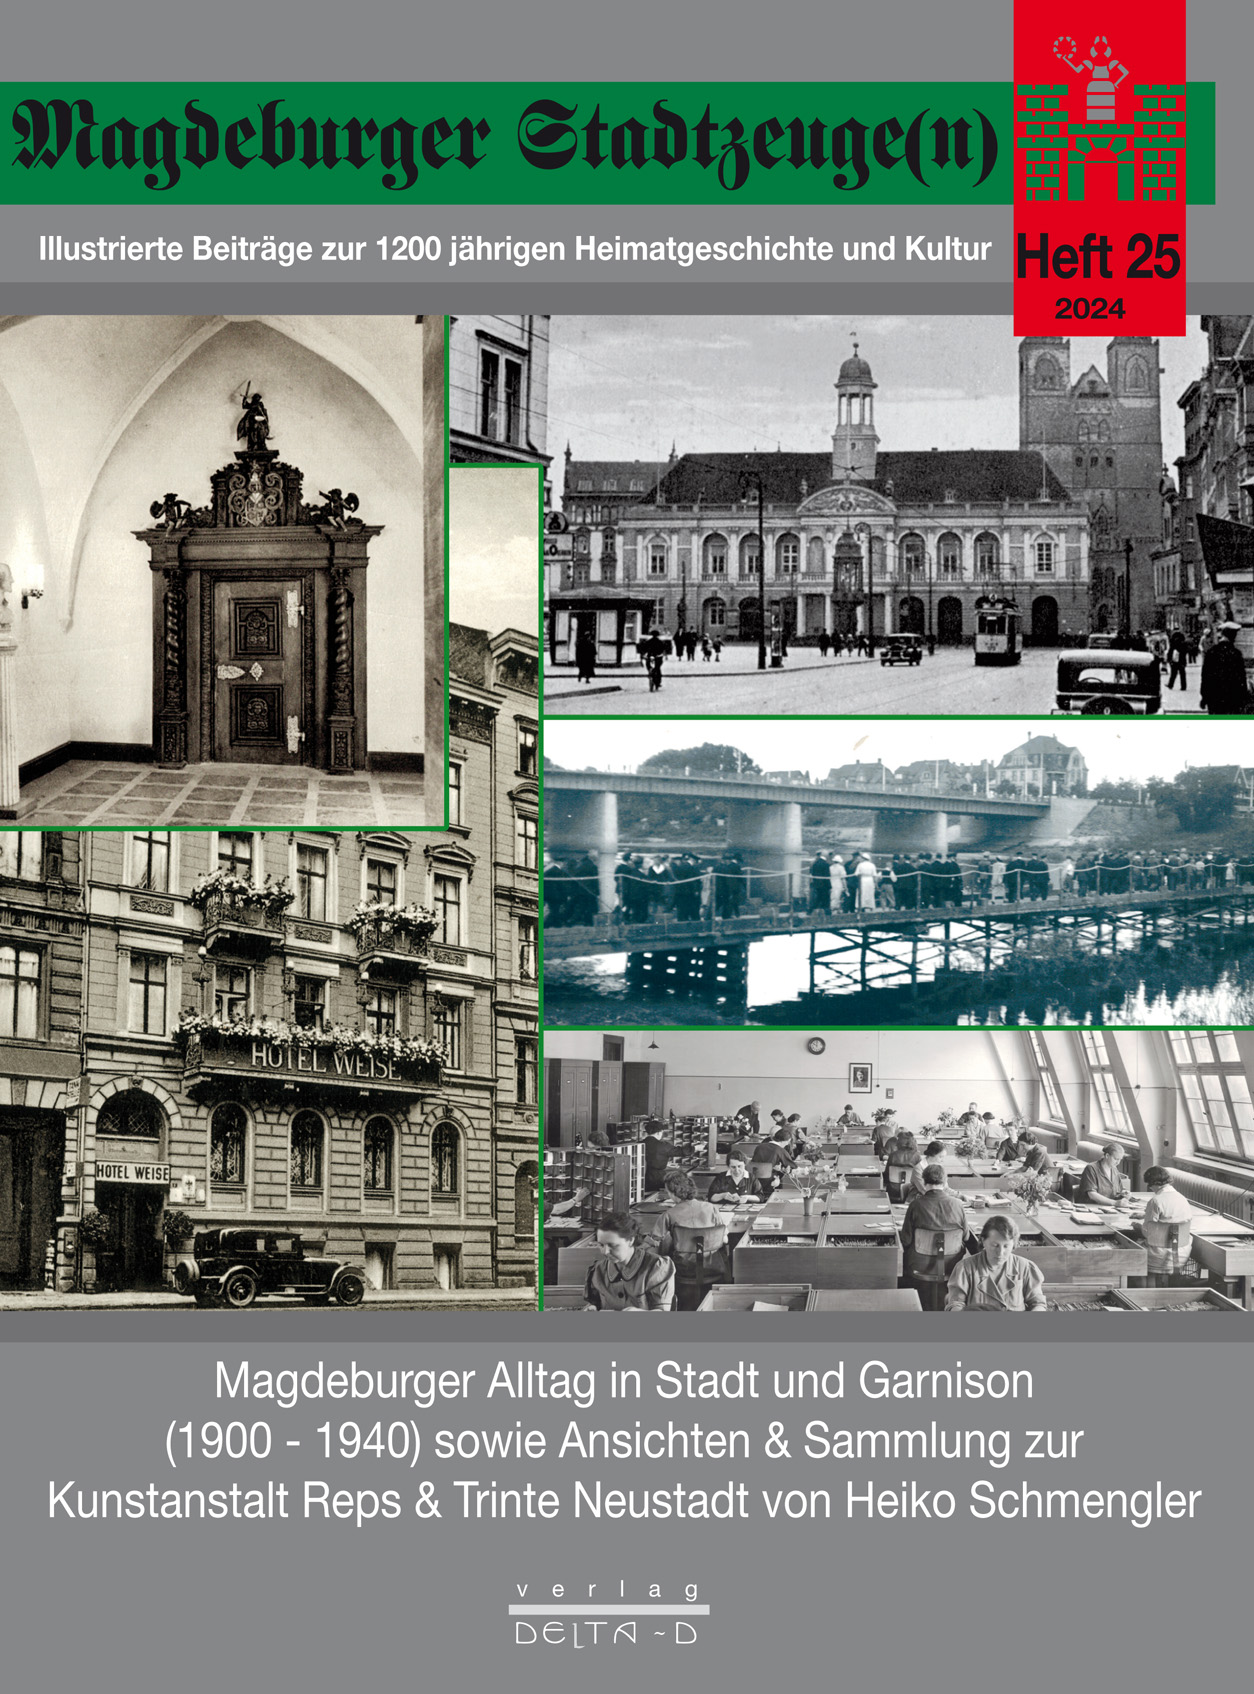 Magdeburger Stadtzeuge(n) Teil 25 